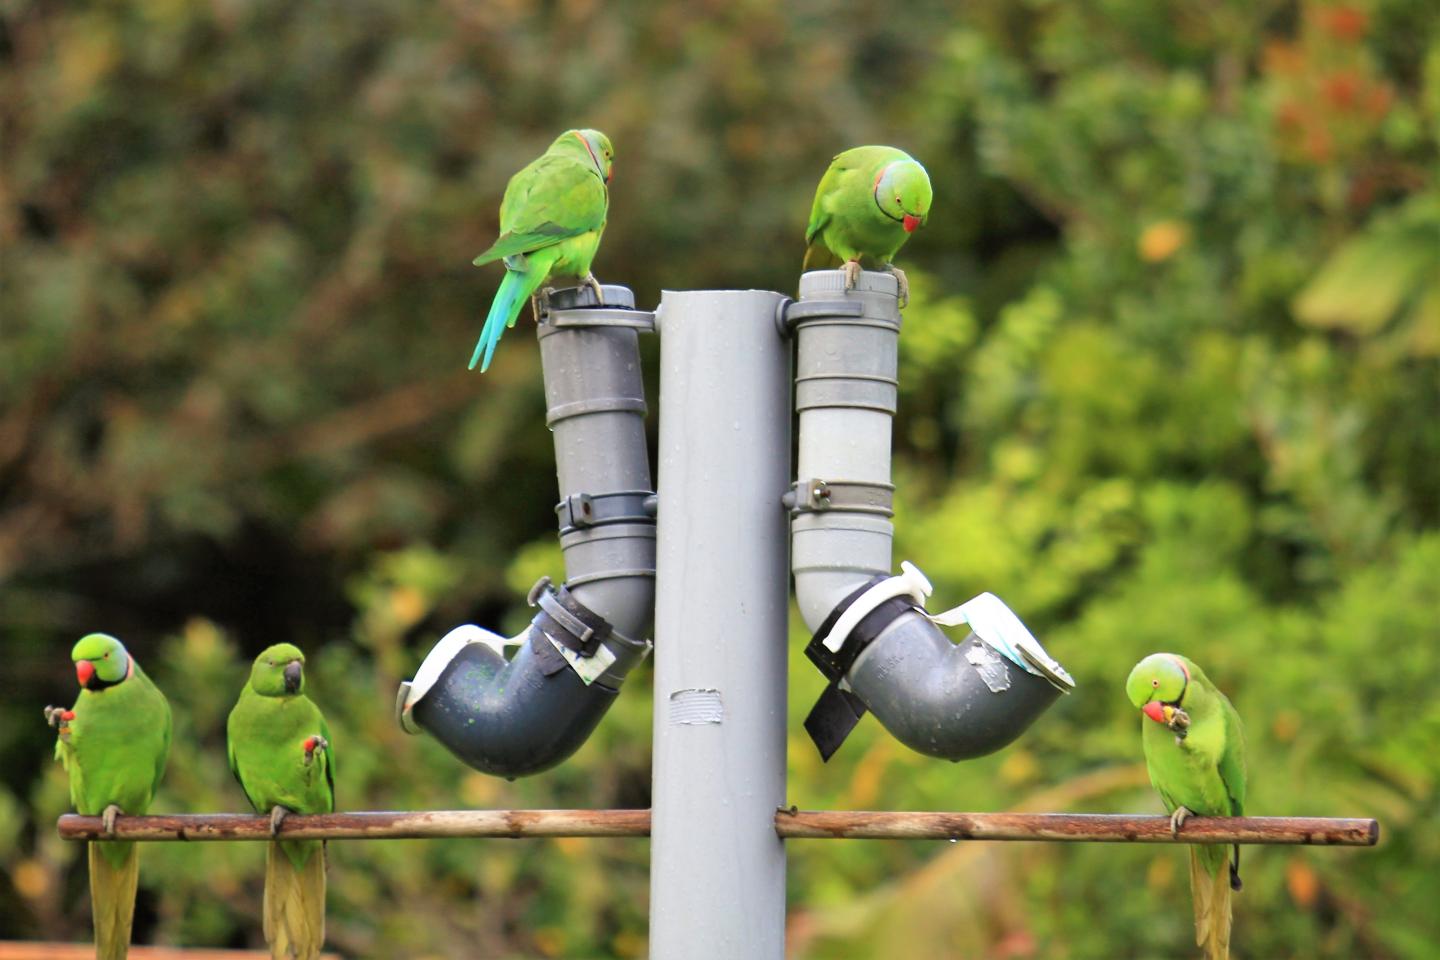 Parakeets at a Feeding Station